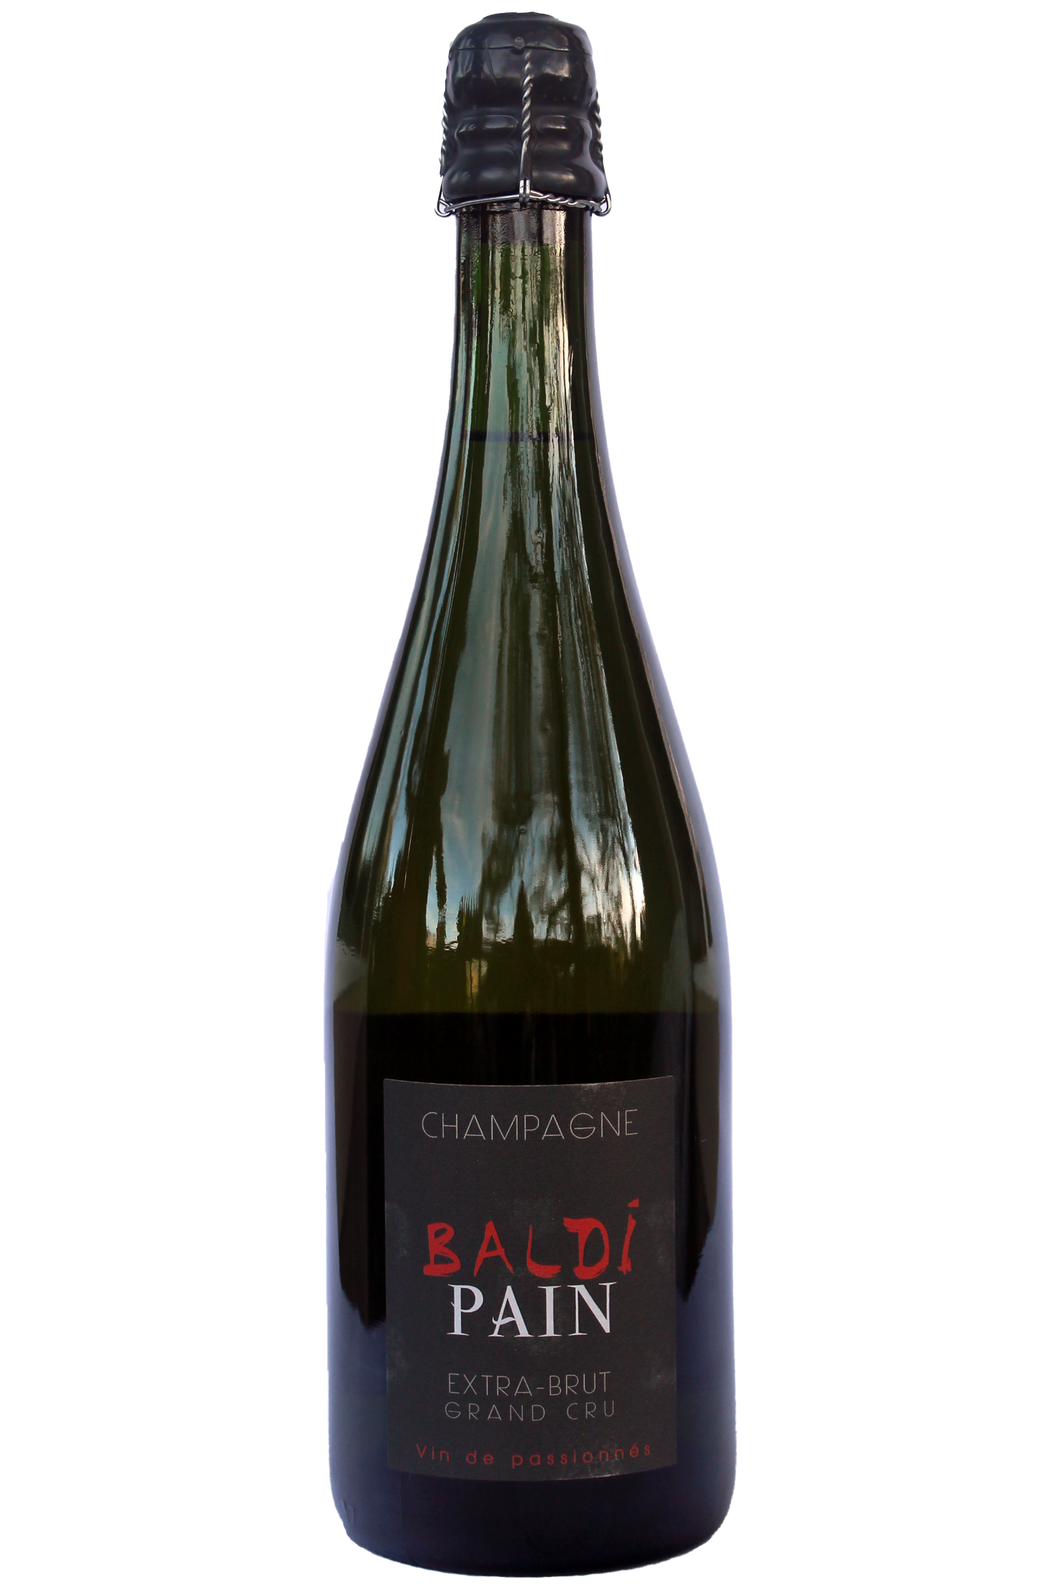 Baldi-Pain Champagne Grand-Cru